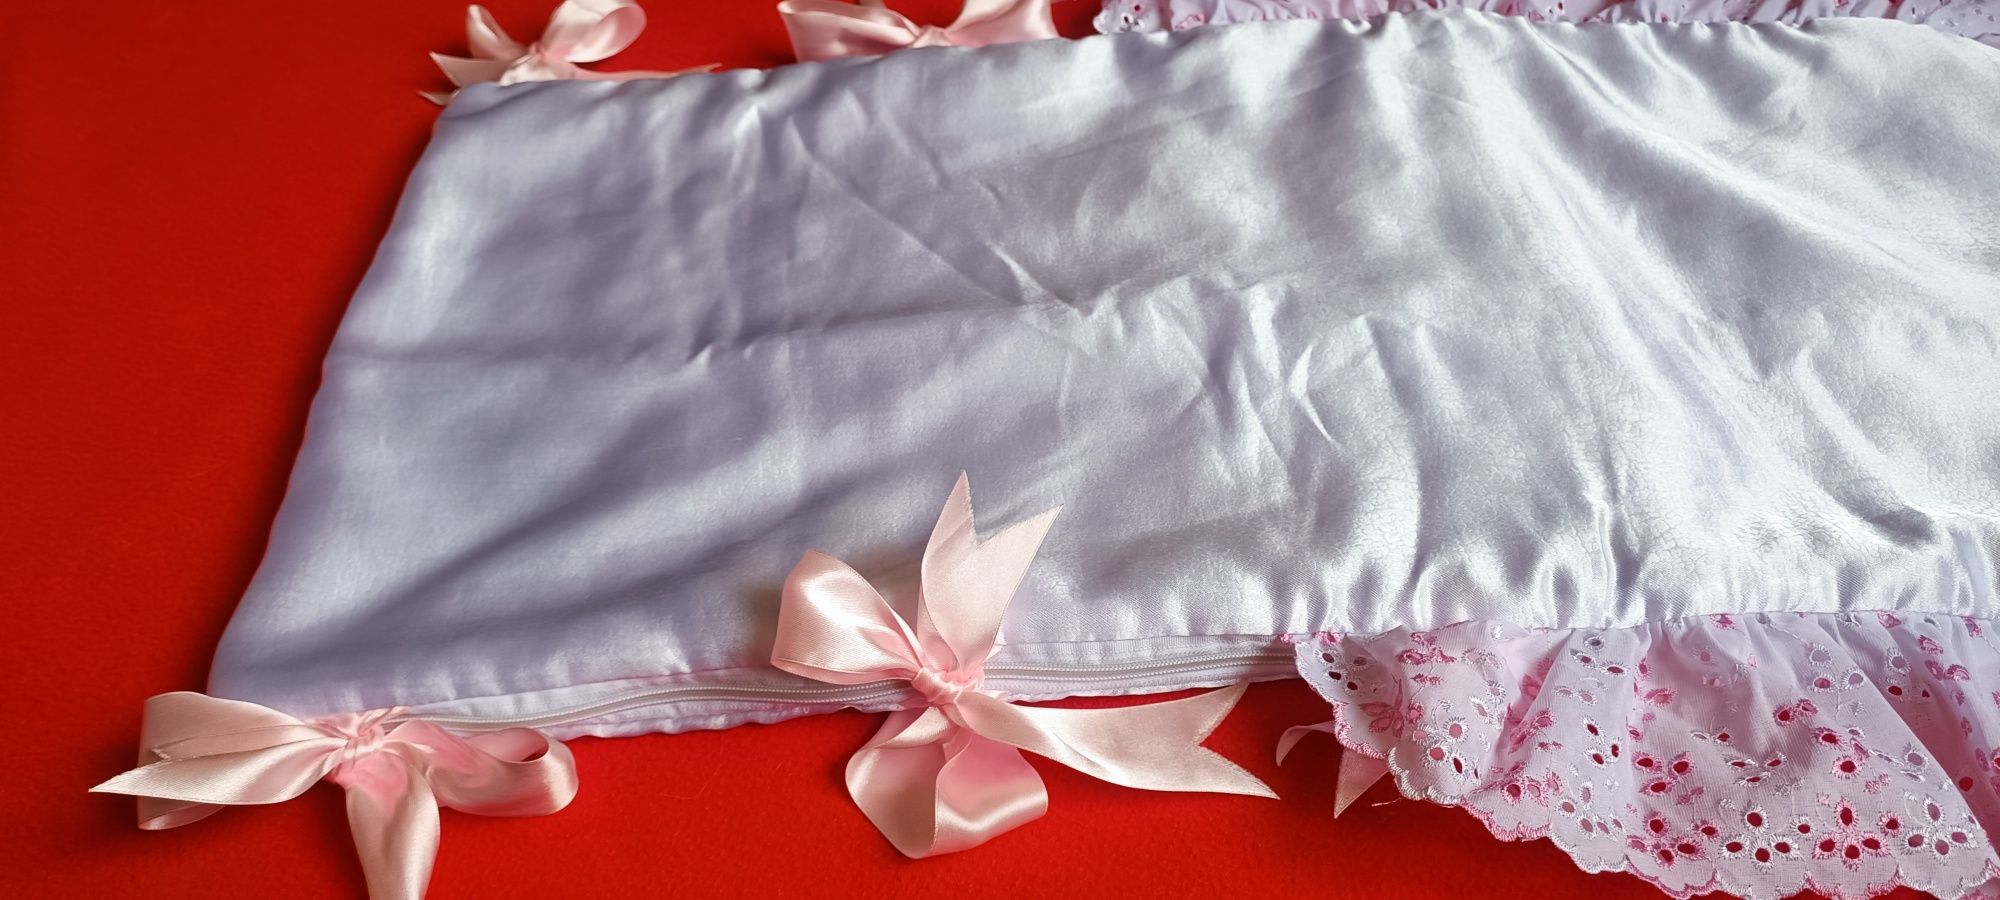 Конверт плед одеяло на выписку для девочки осень/весна